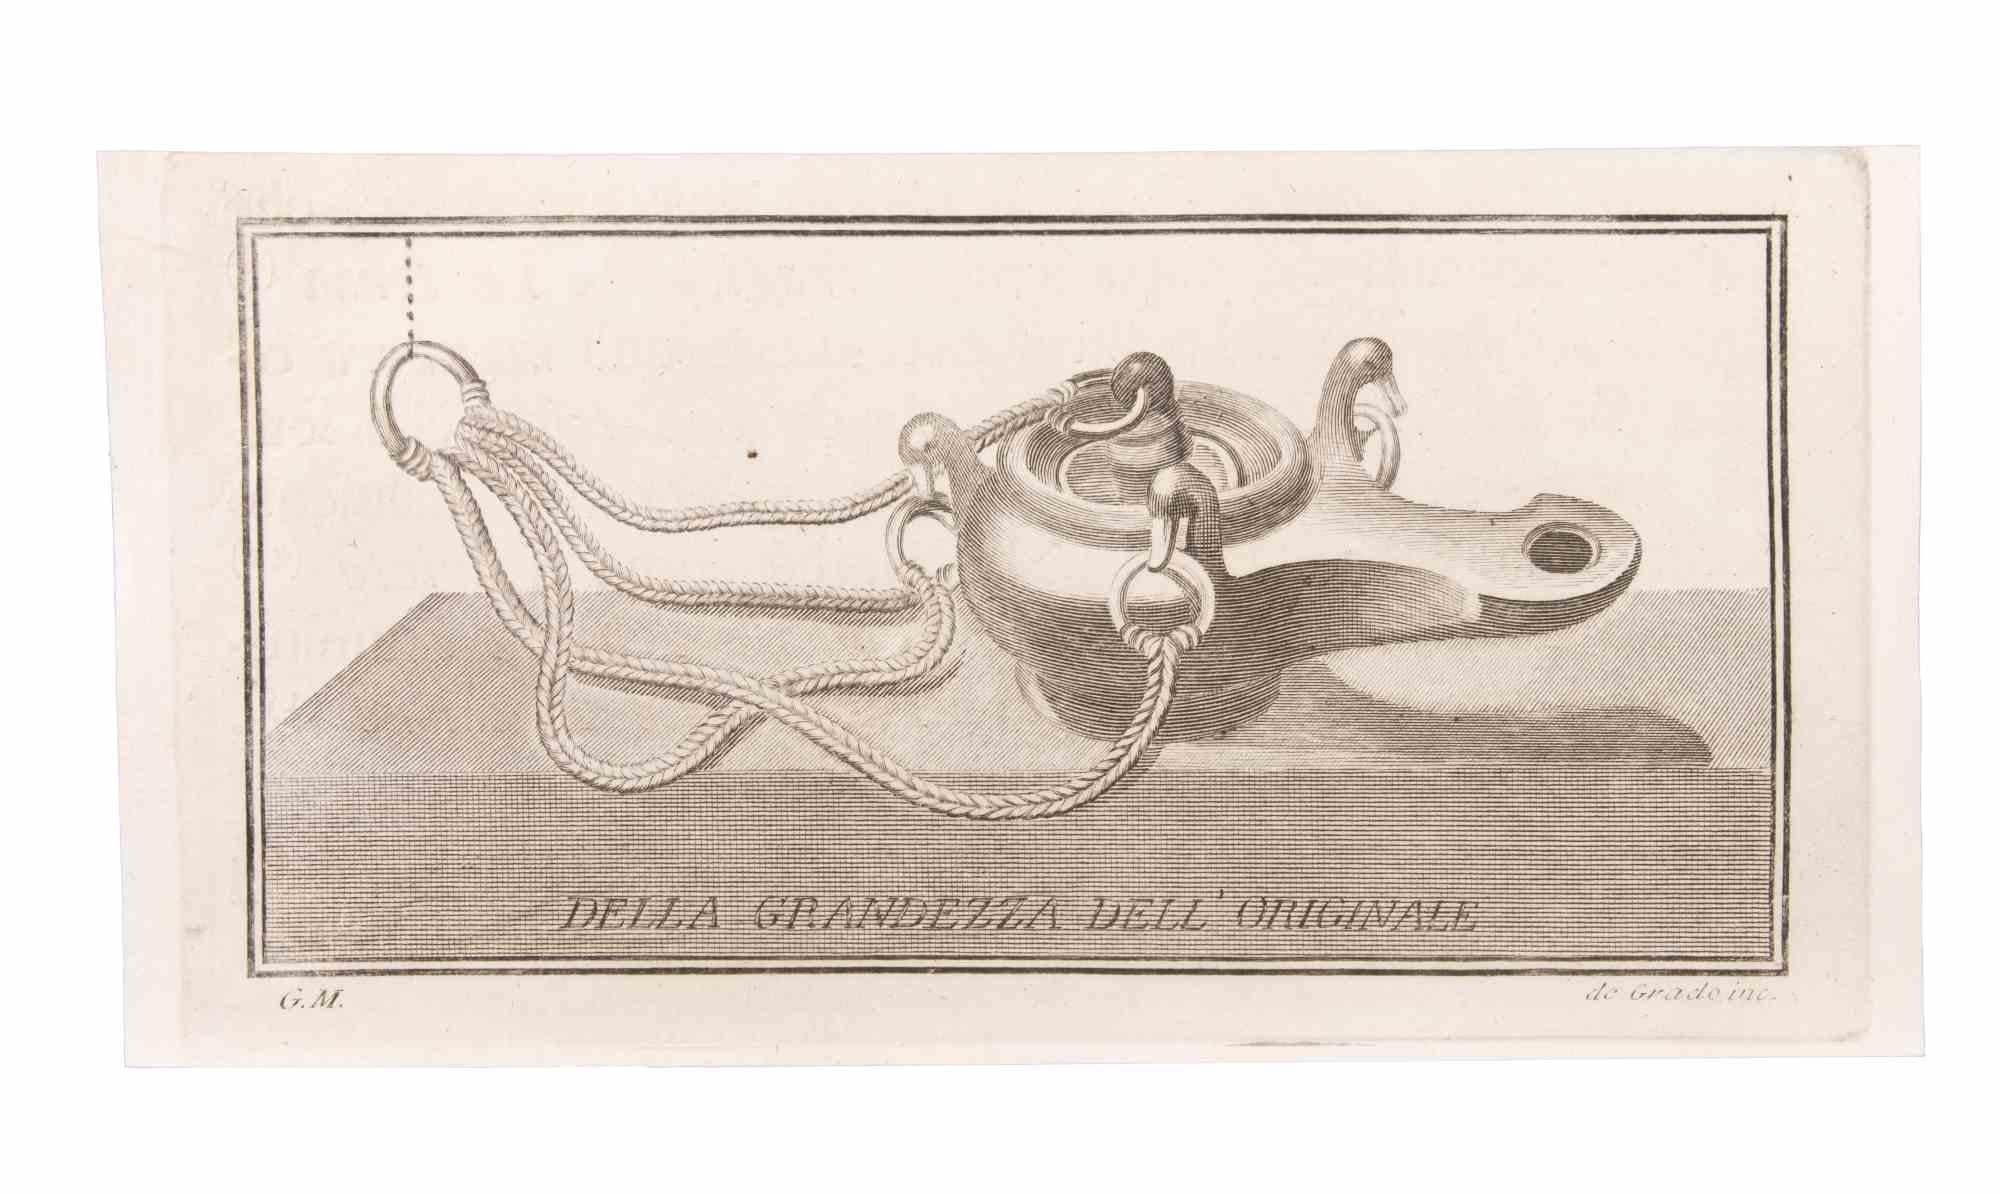 Lampe à huile à suspendre est une gravure réalisée par  Filippo de Grado (1705-1780).

La gravure appartient à la suite d'estampes "Antiquités d'Herculanum exposées" (titre original : "Le Antichità di Ercolano Esposte"), un volume de huit gravures